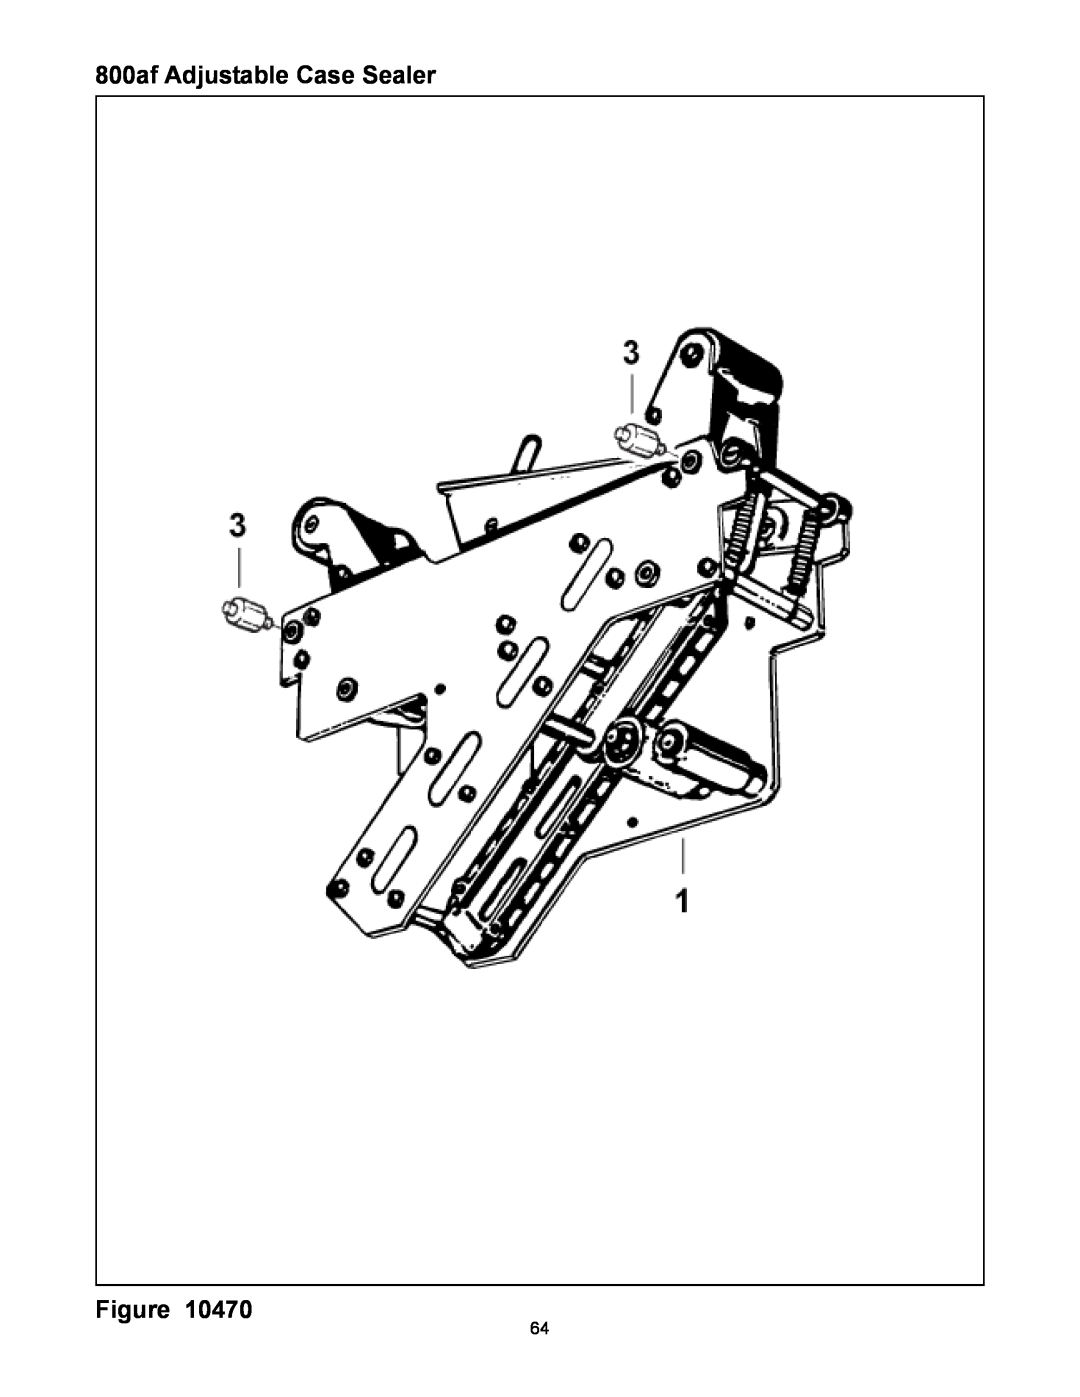 3M 800af-s manual 800af Adjustable Case Sealer Figure 